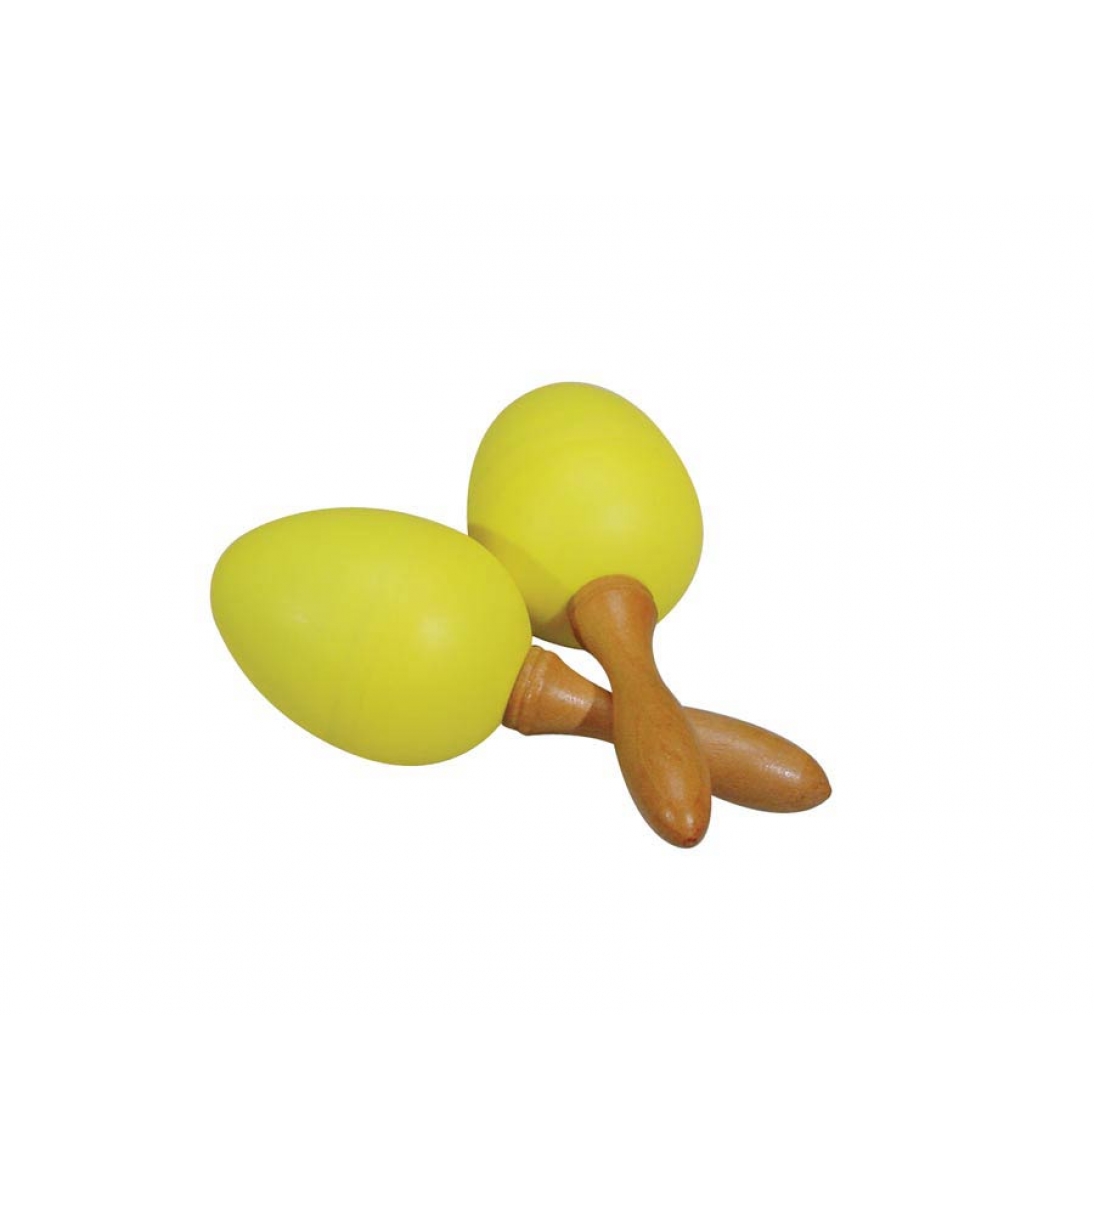 Uova maracas, in plastica, colore giallo, un paio, con manico, 45 grammi